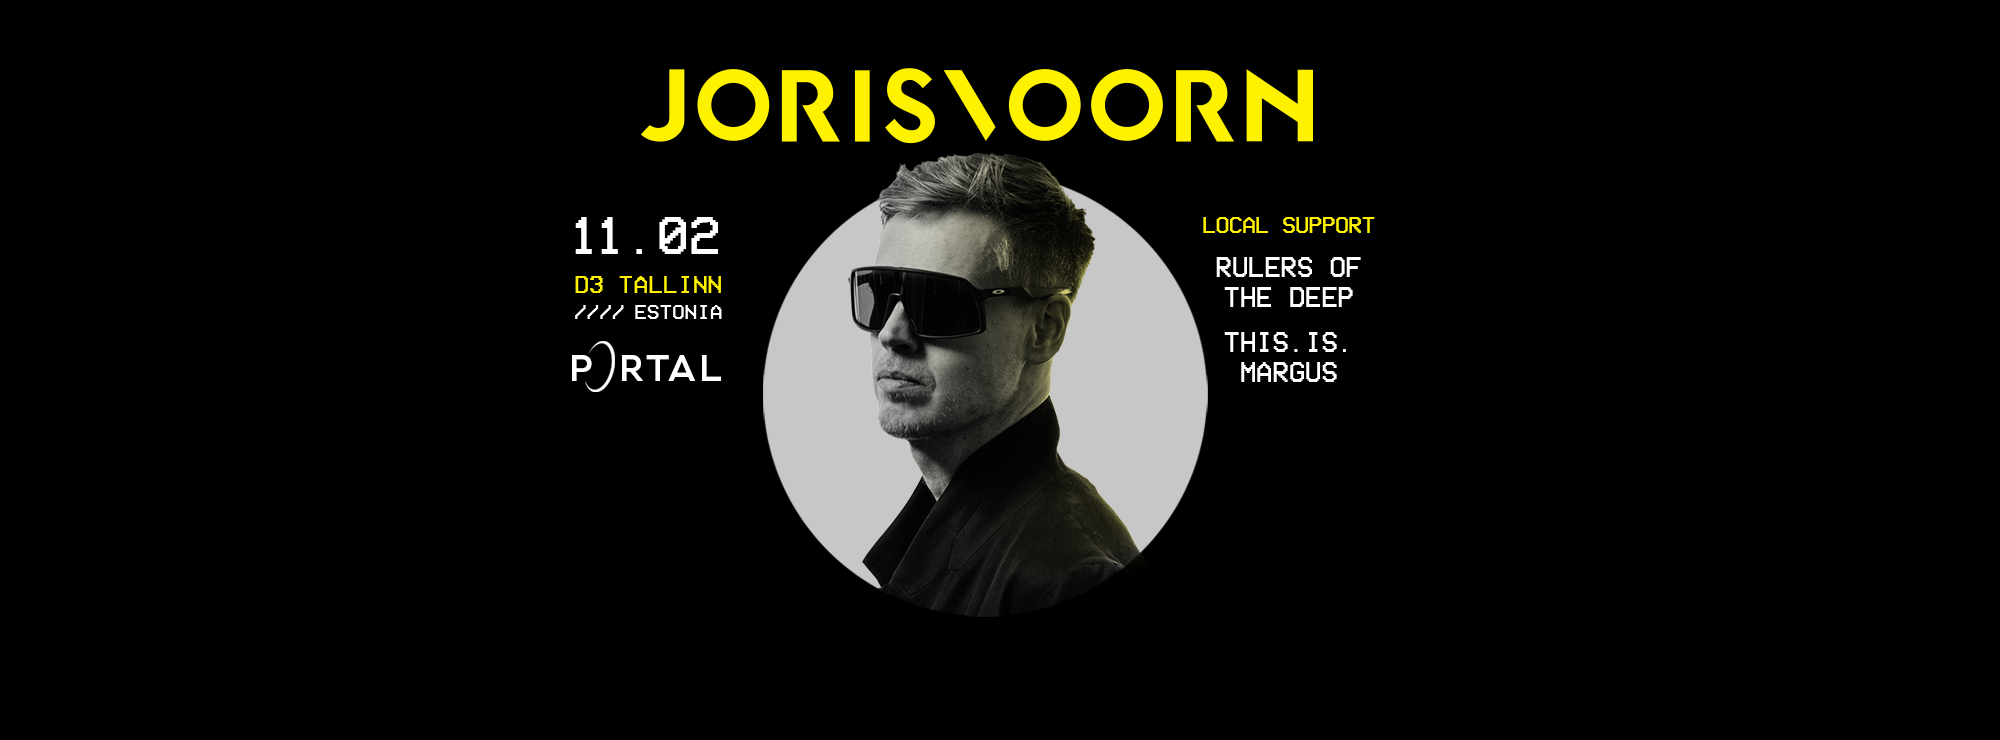 Joris Voorn for Portal Infinity launch event - フライヤー表